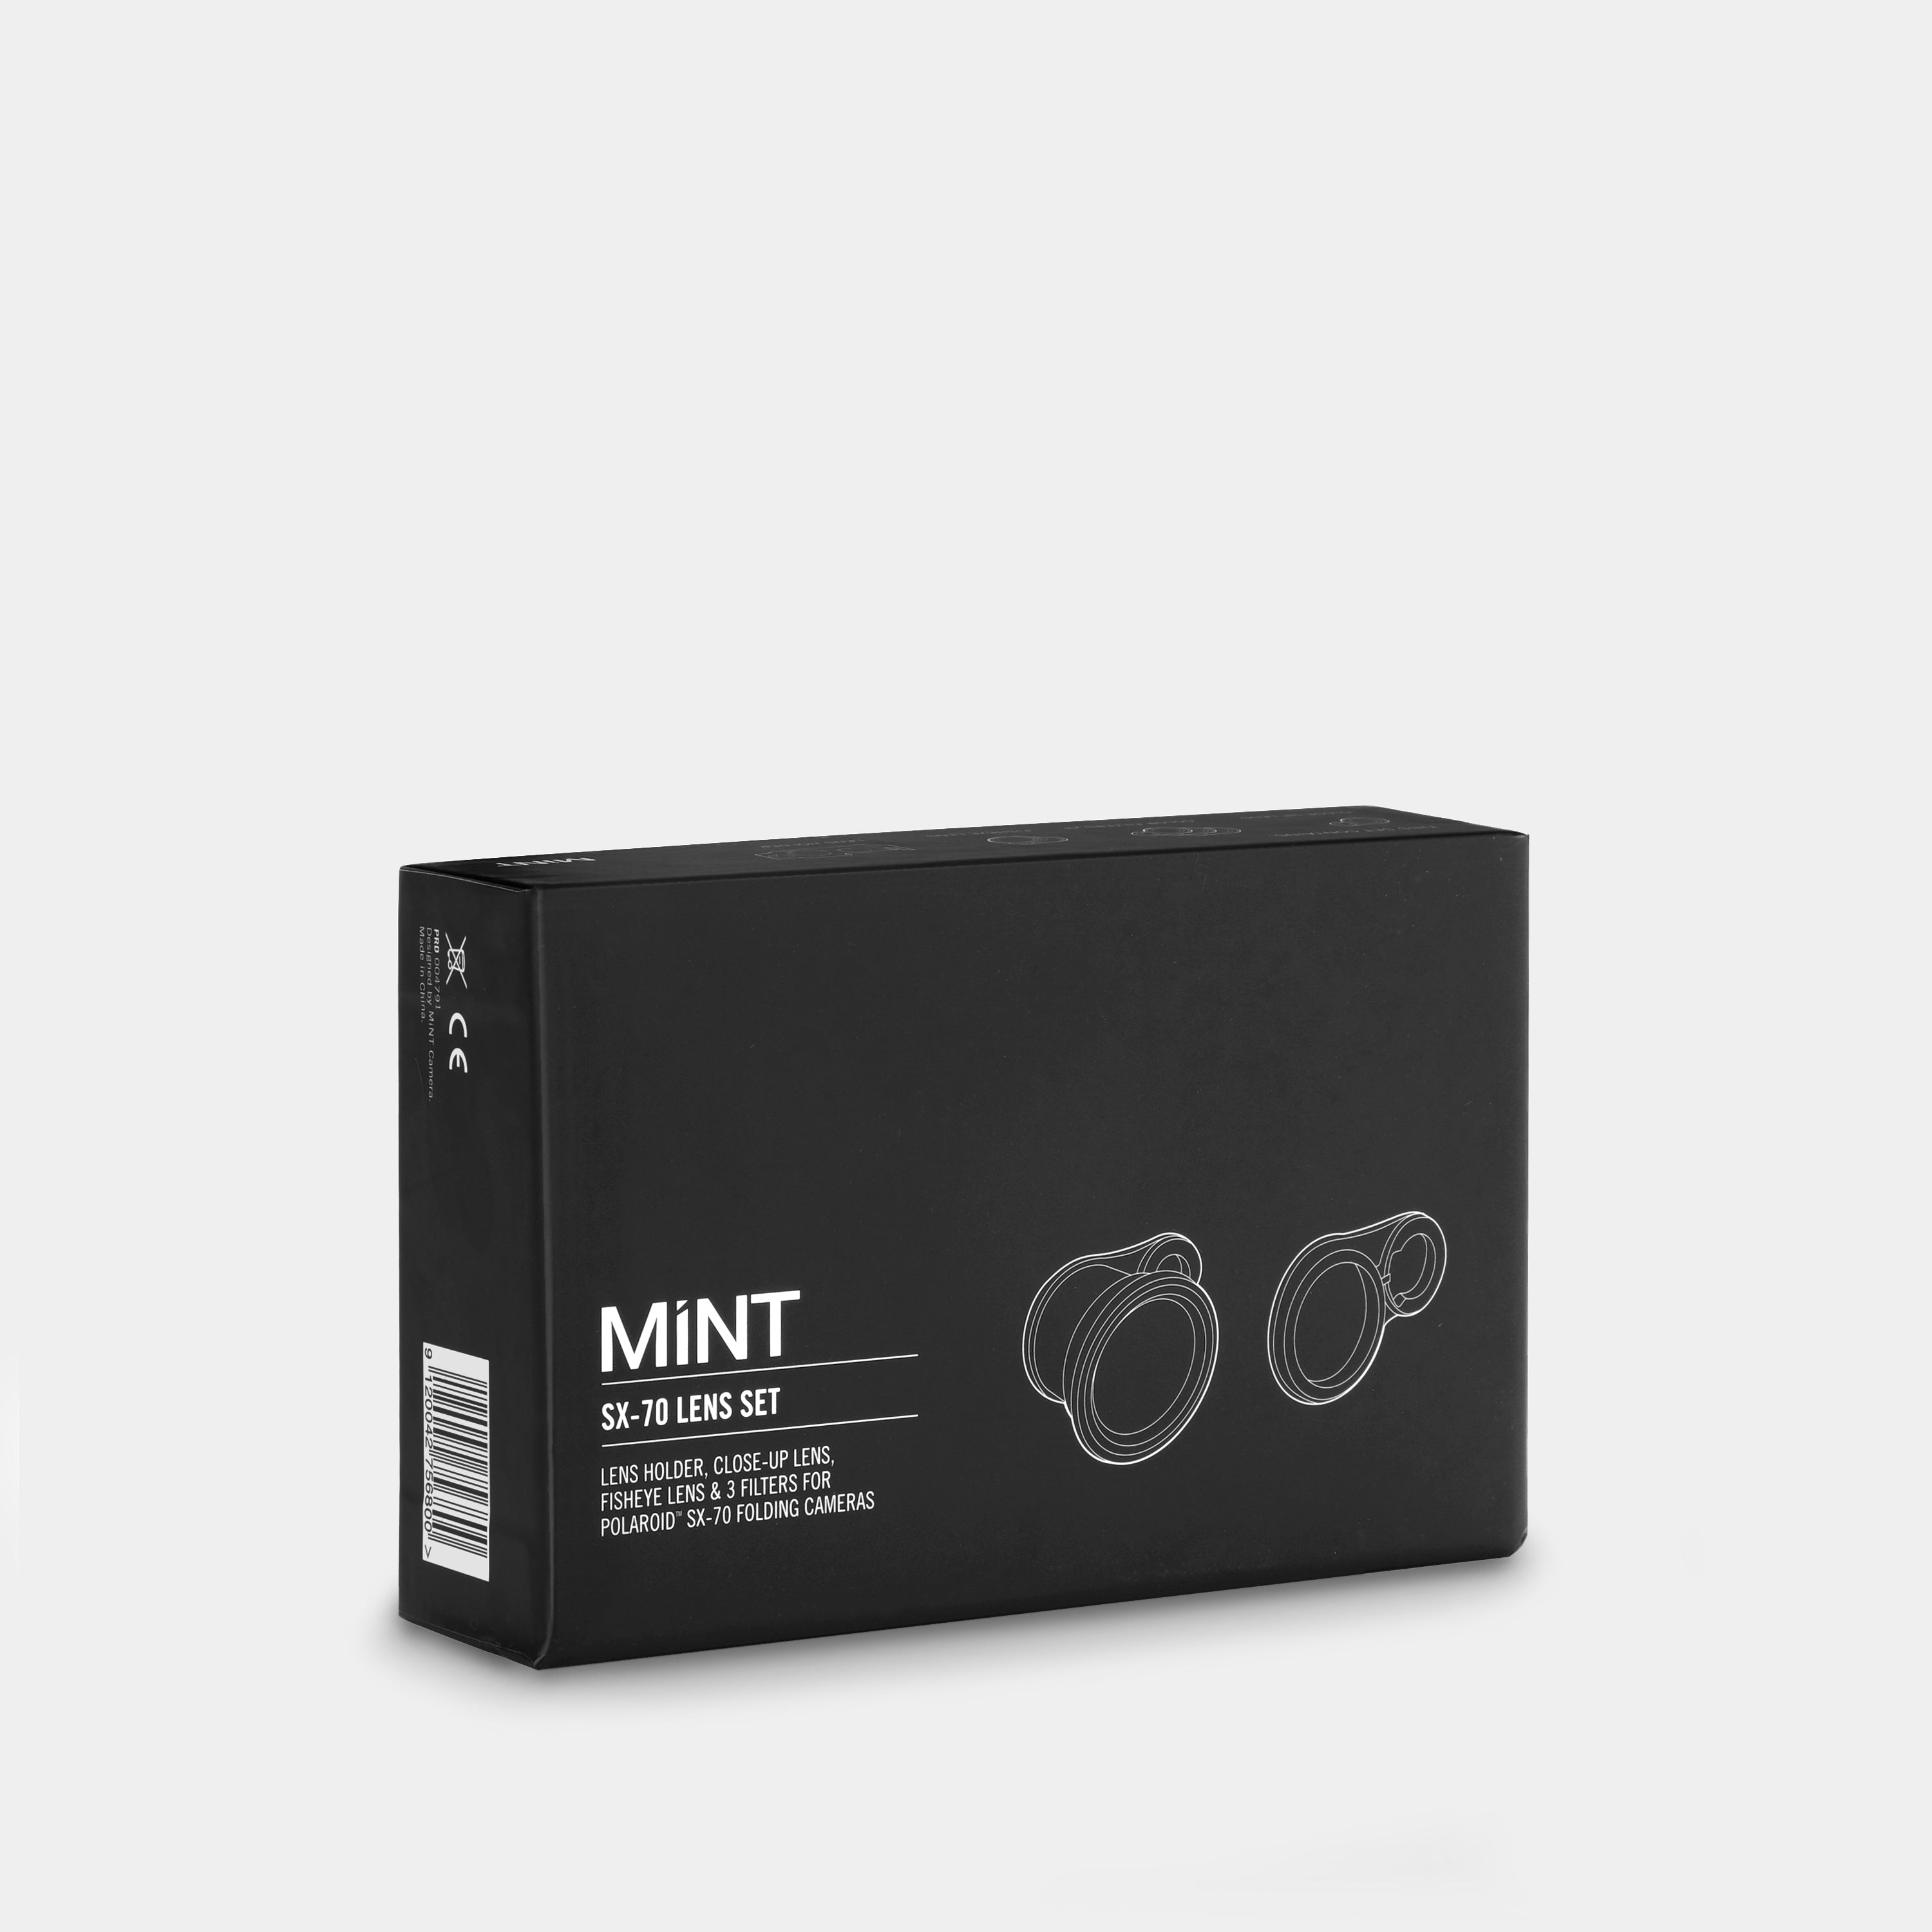 MiNT SX-70 Lens Set